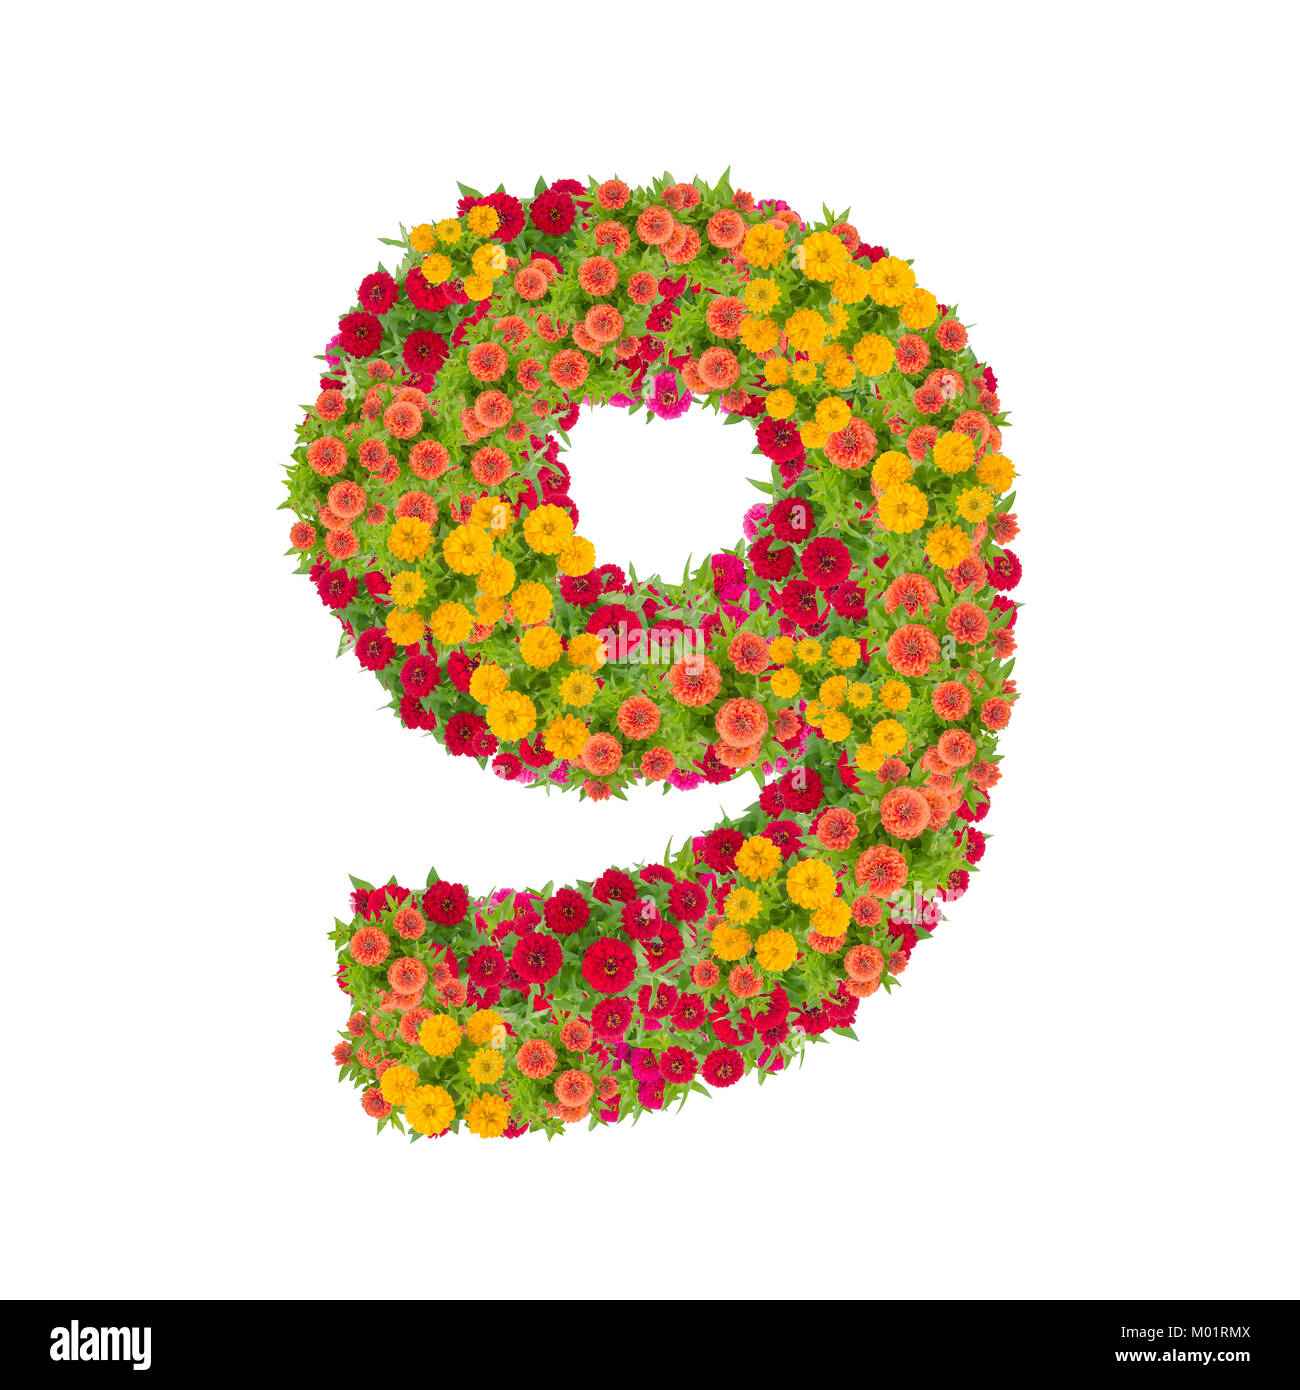 Nummer 9 von zinnien Blumen auf weißem Hintergrund gemacht. Farbenfrohe zinnia Blume in Nummer neun Form mit Freistellungspfad Stockfoto